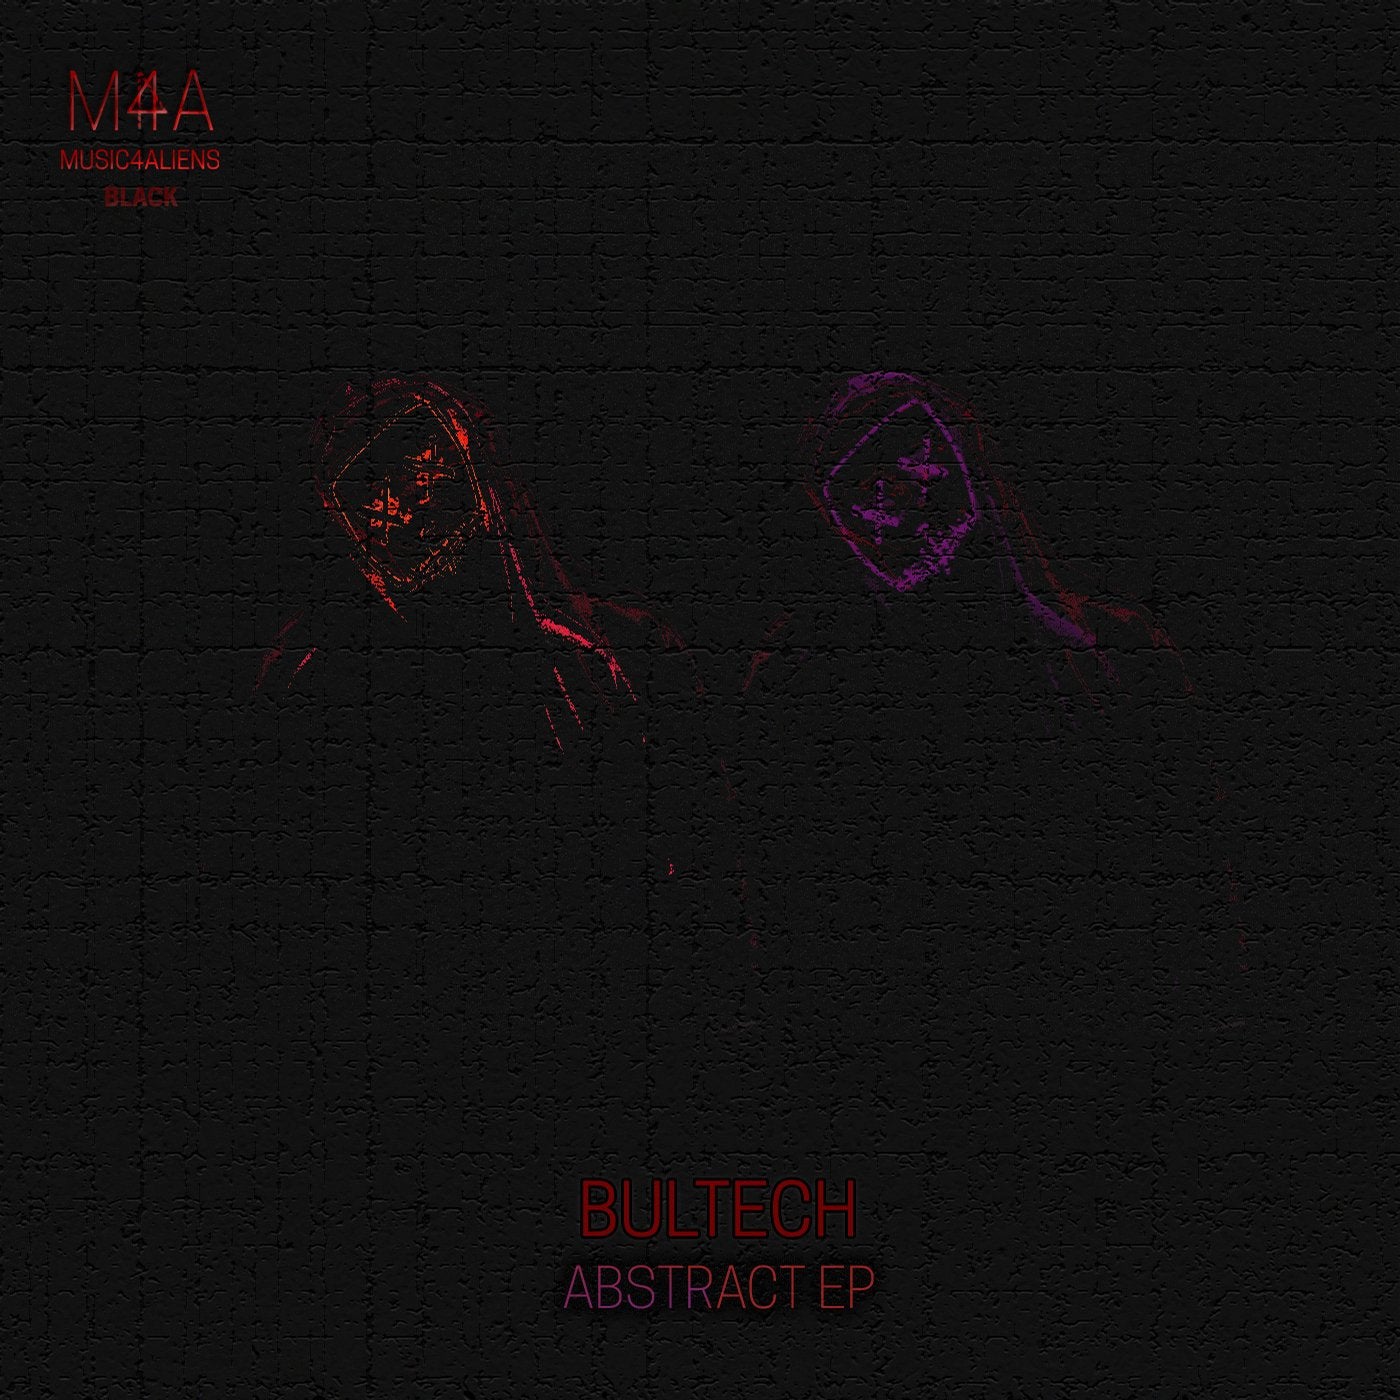 Abstract EP